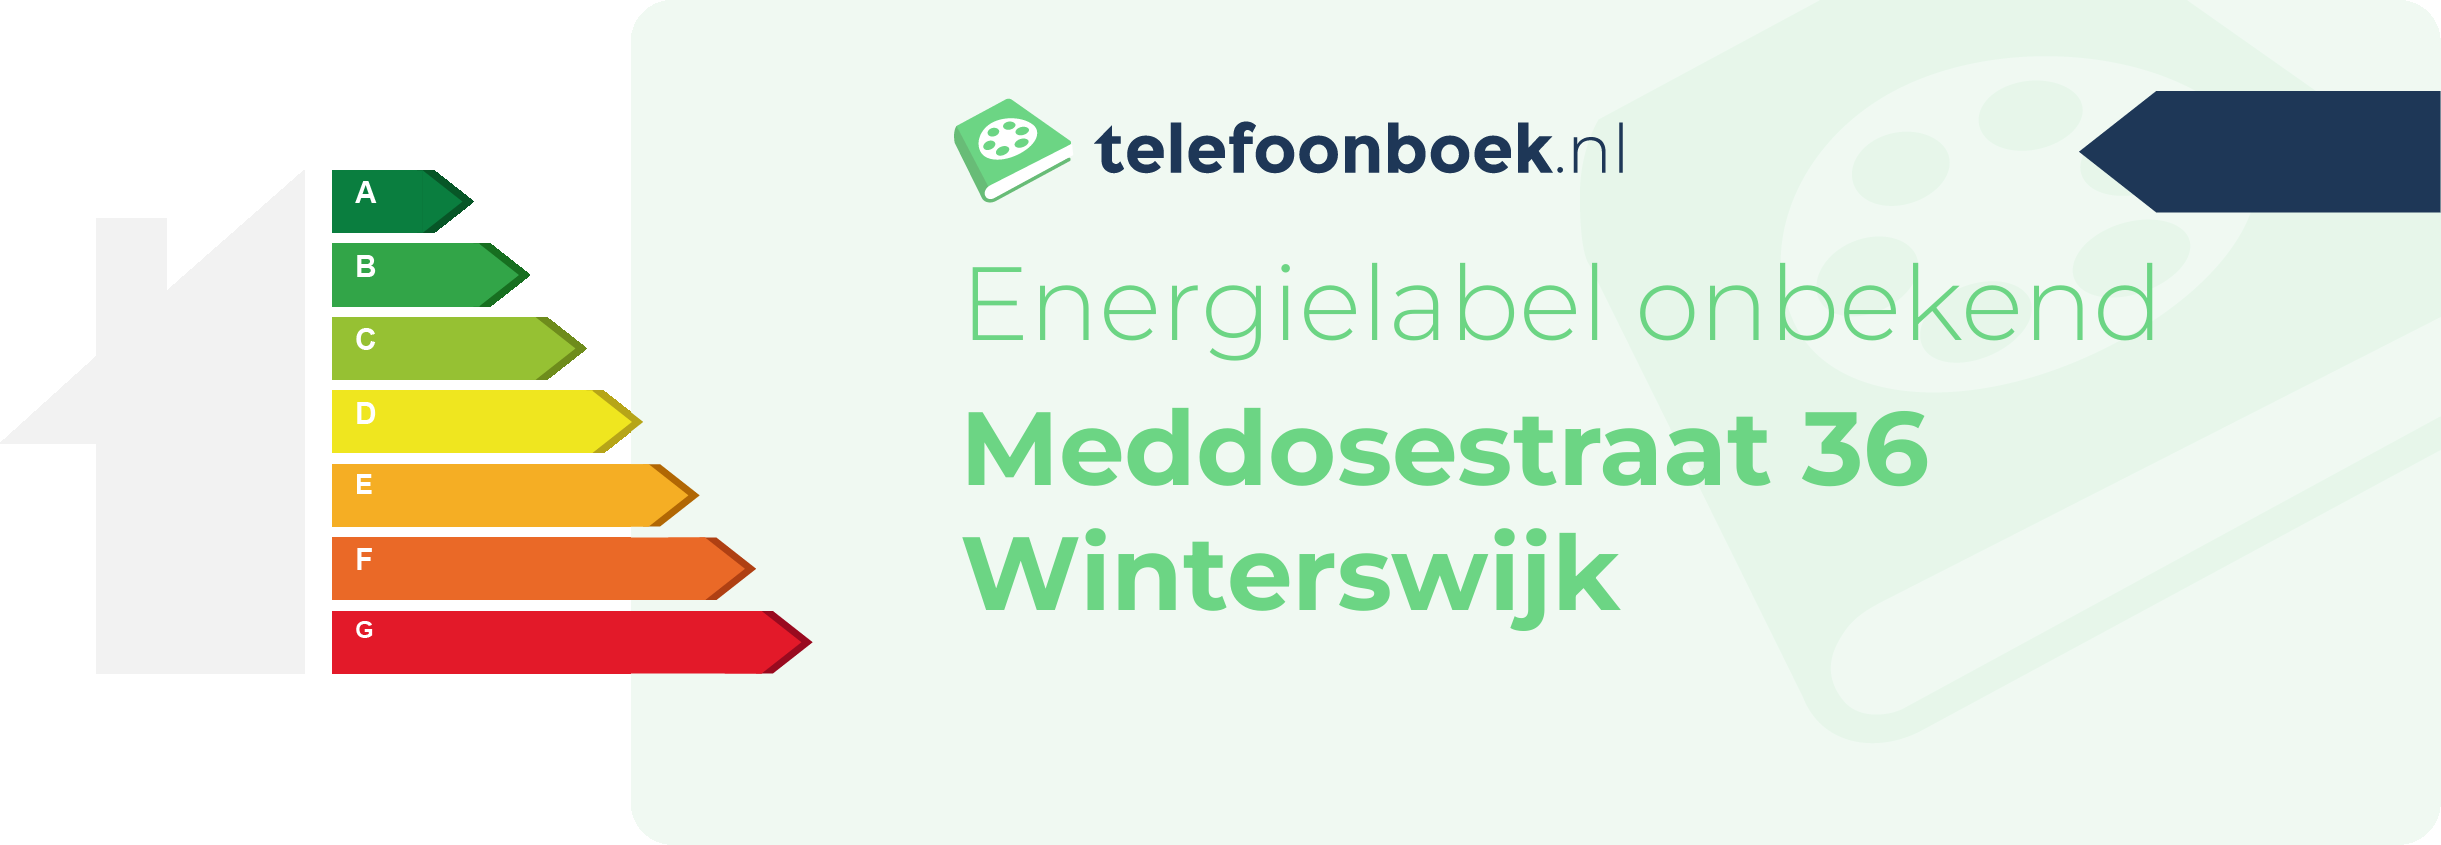 Energielabel Meddosestraat 36 Winterswijk